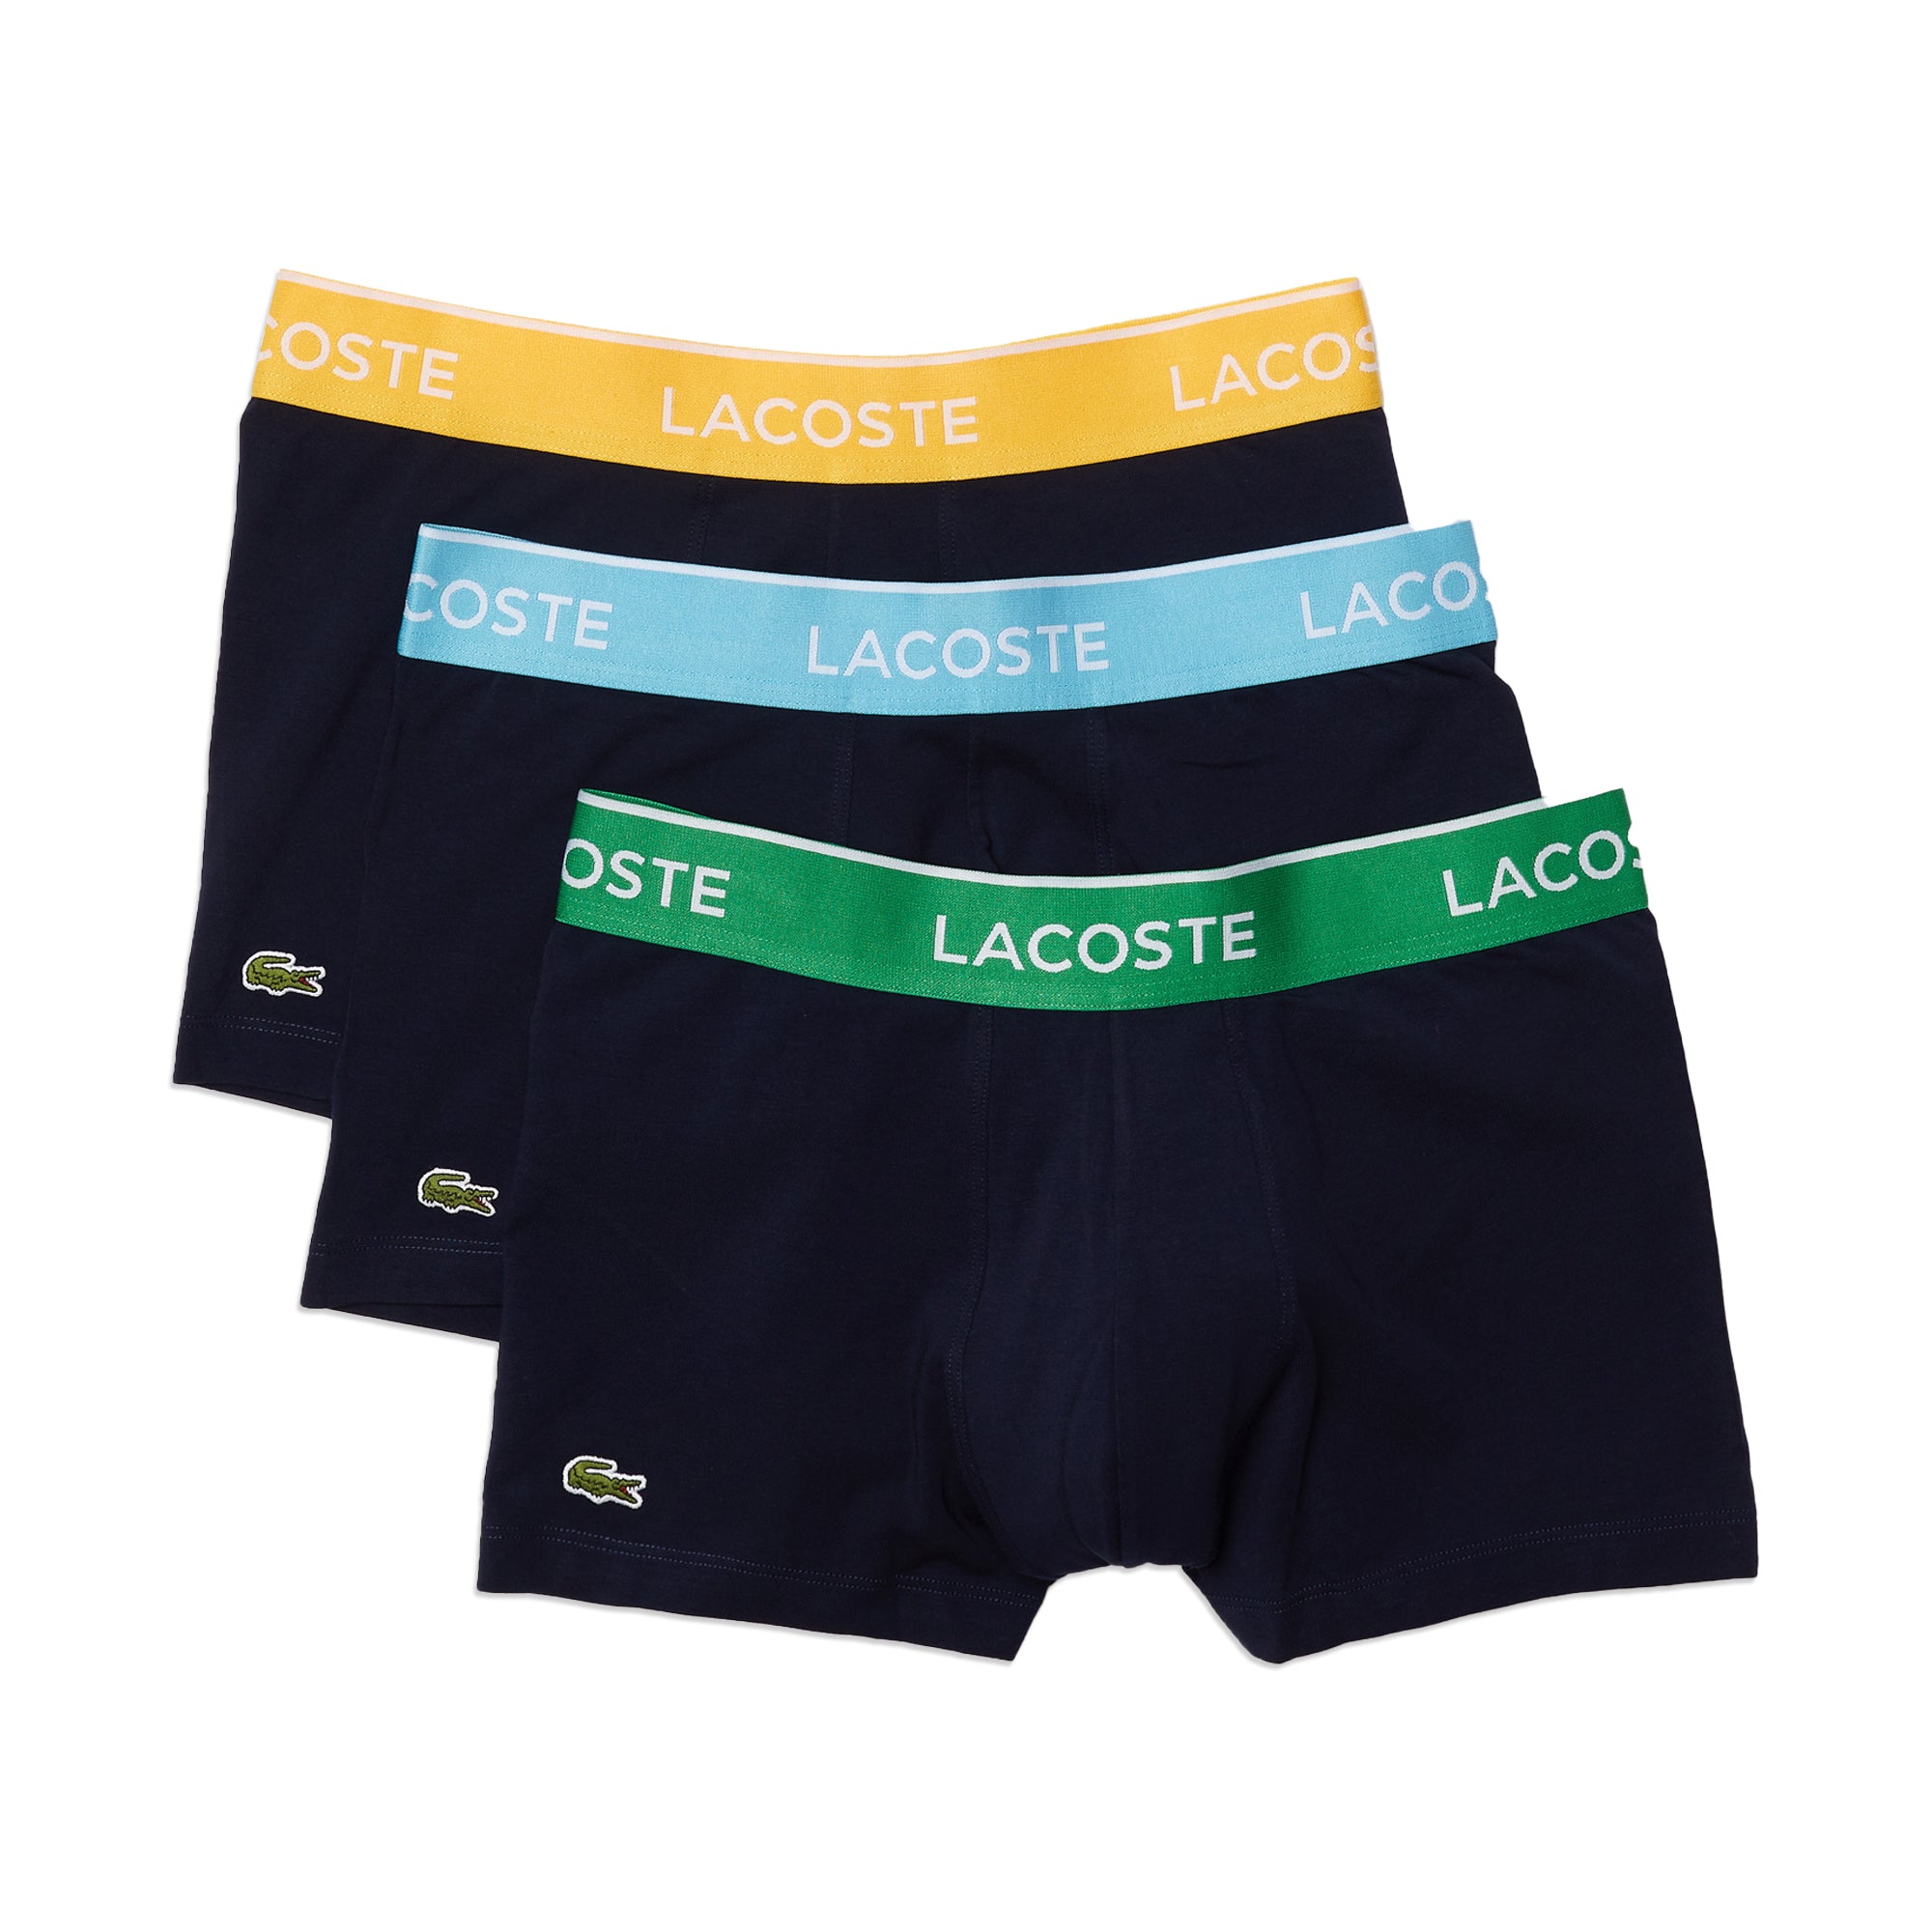 Lacoste Underwear Triple Pack Trunks Navy